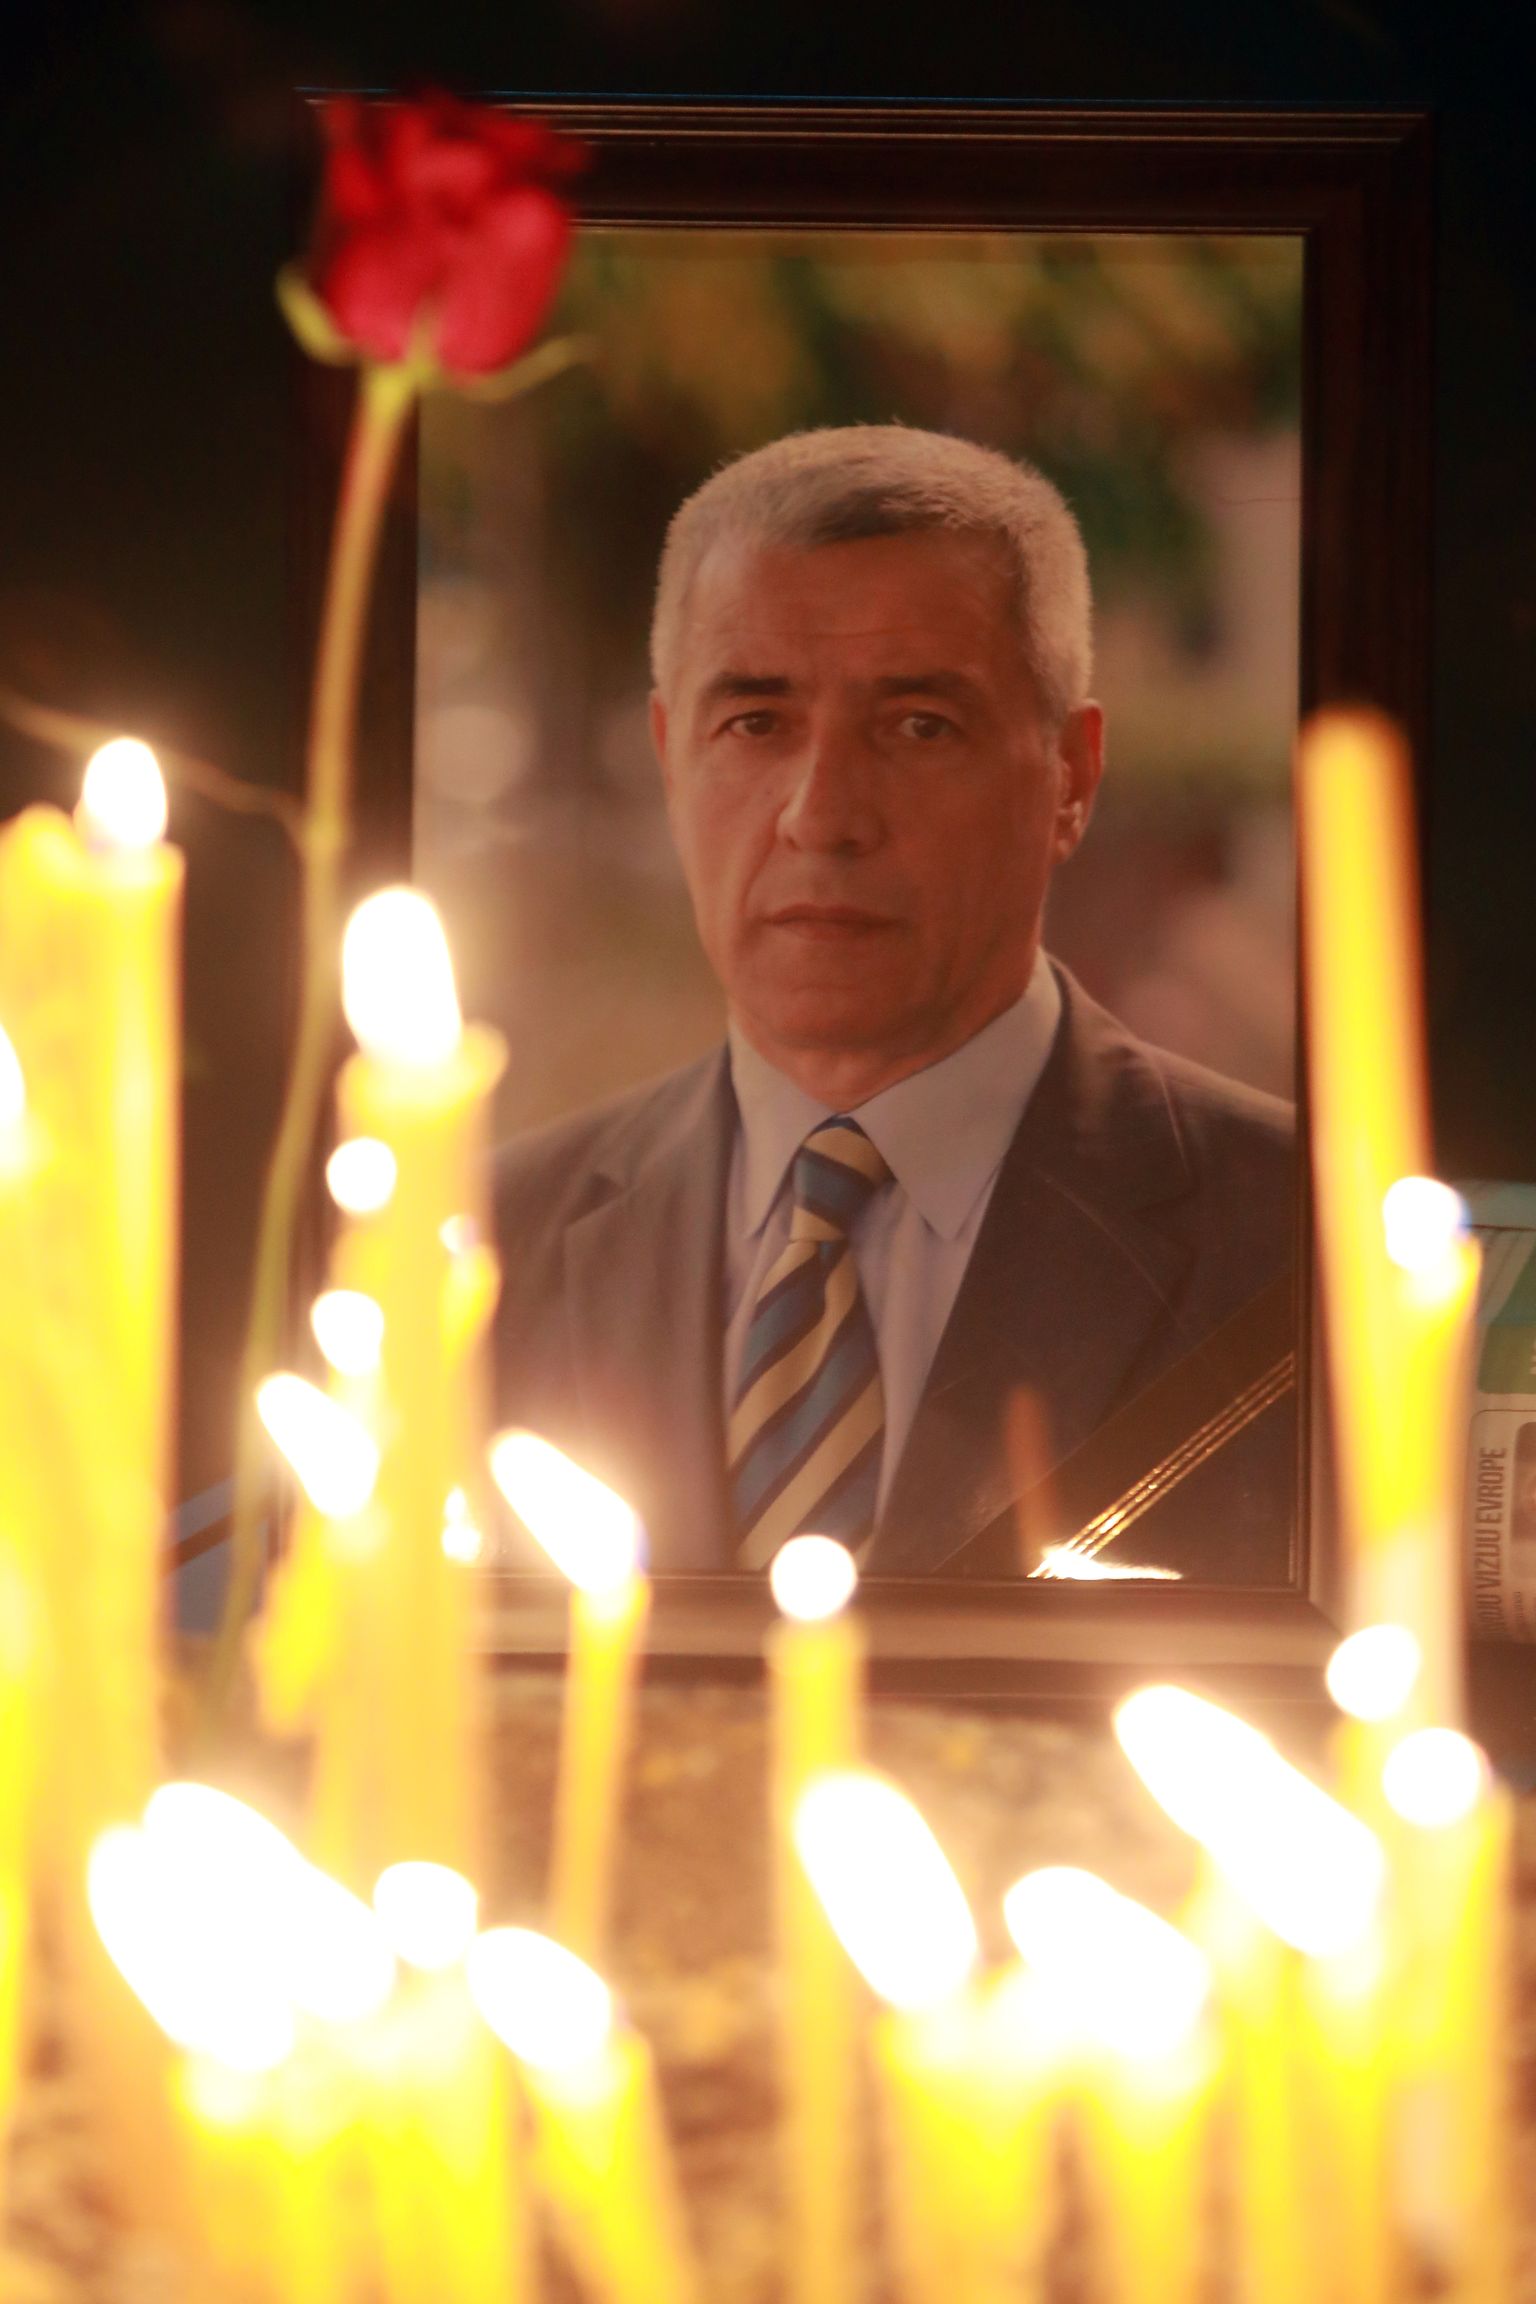 Tapetud Kosovo serblasest poliitikut Oliver Ivanovici mälestati küünalde süütamisega.